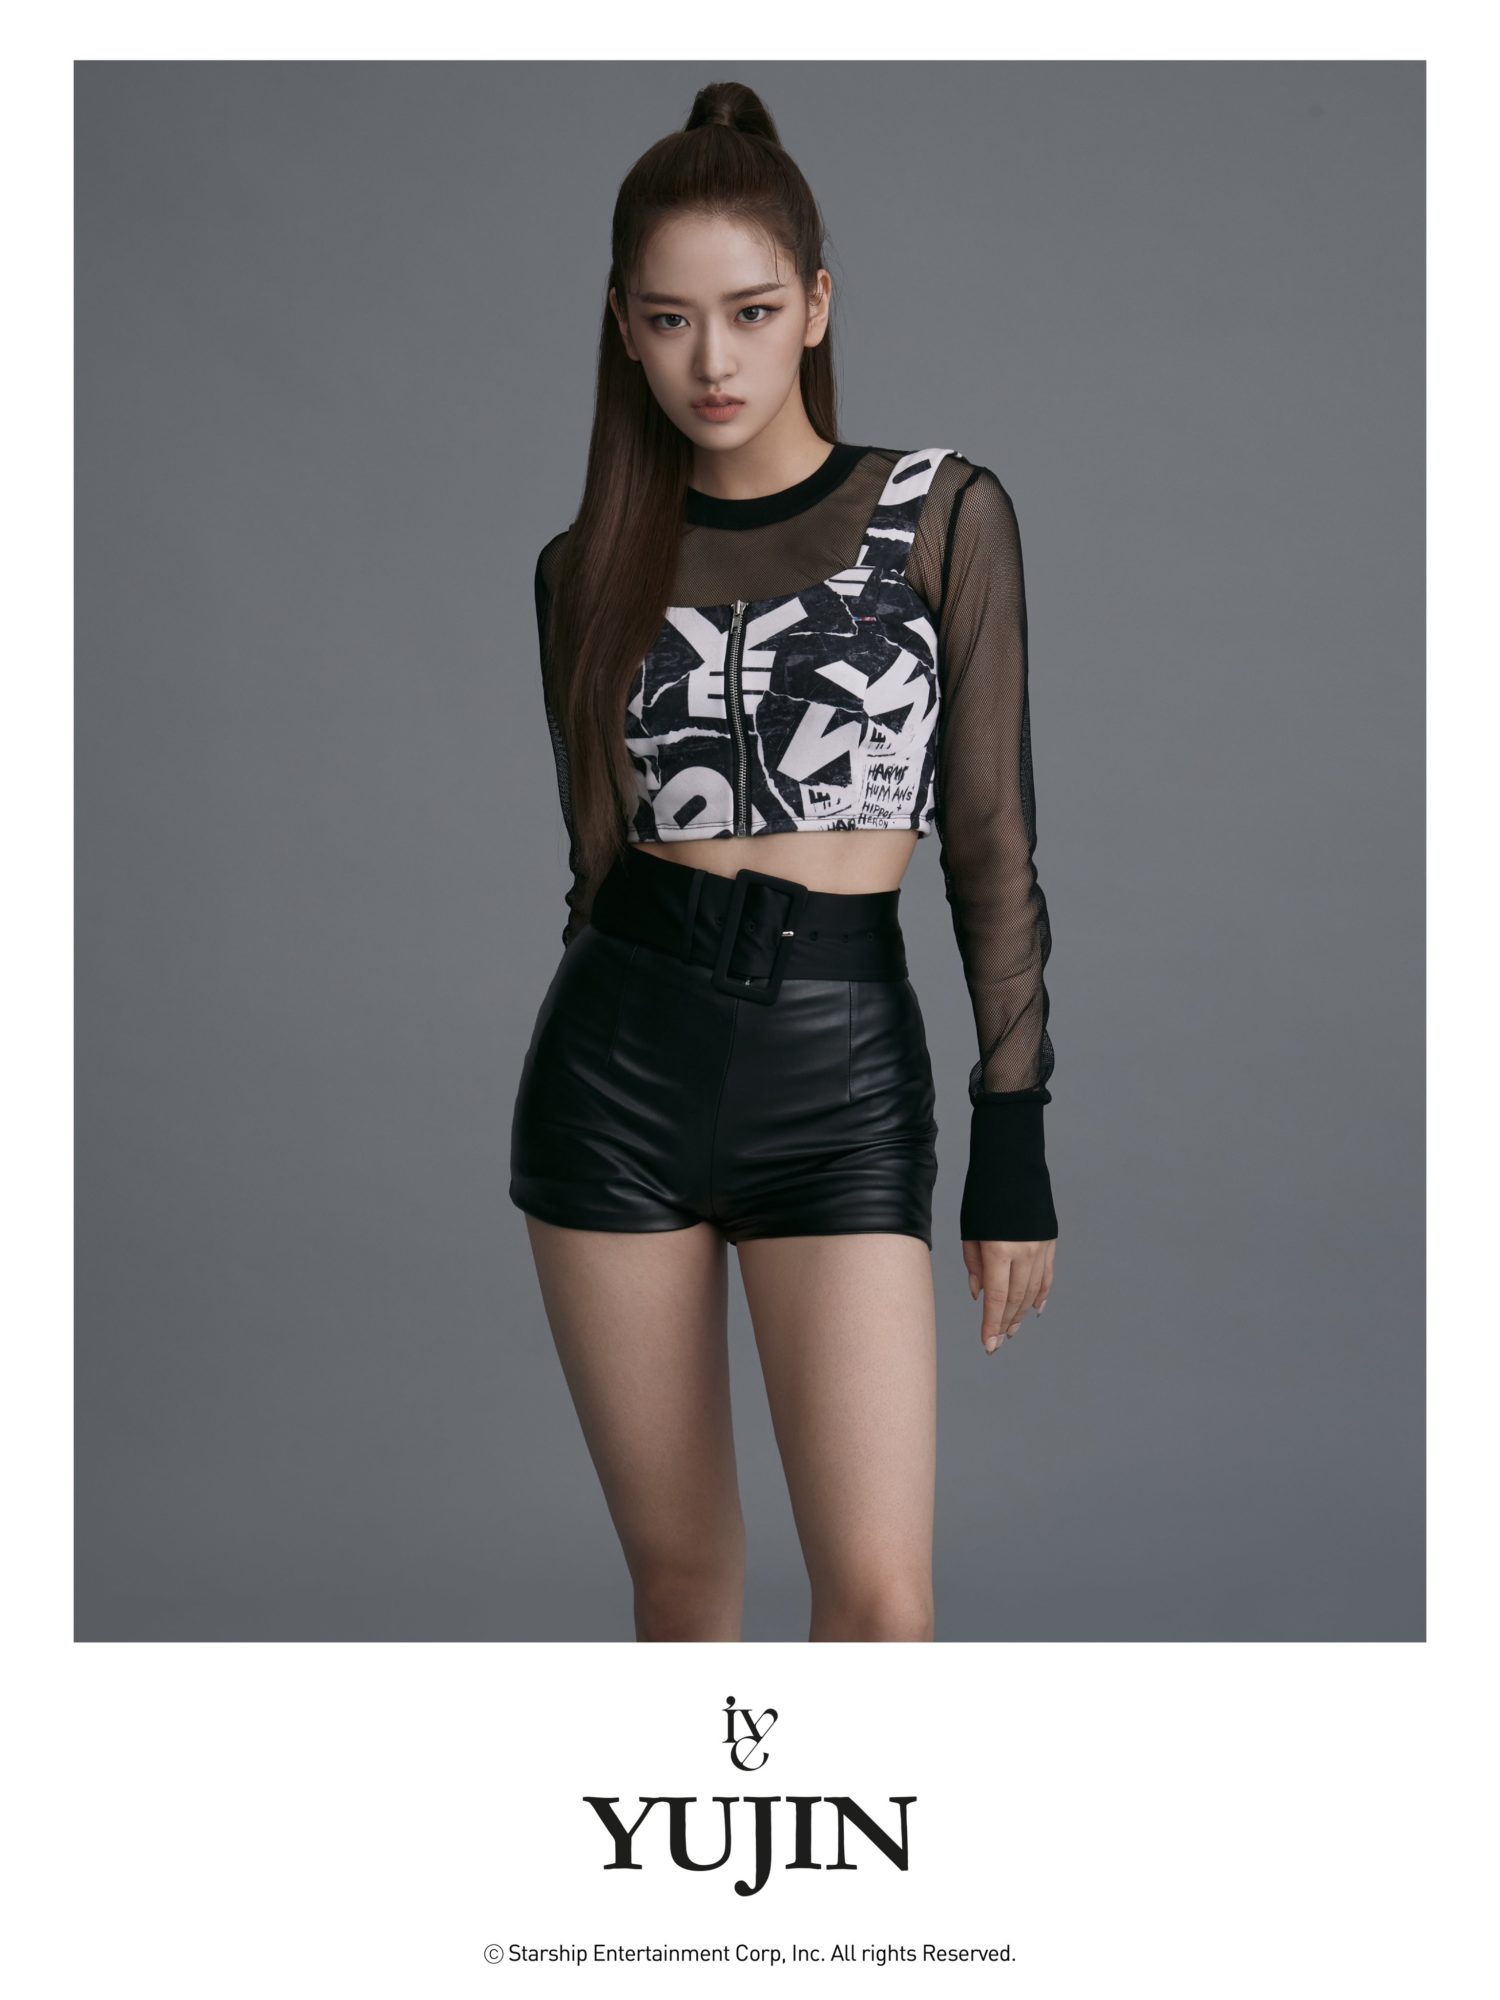 IVE Yujin Debut Profile Photo